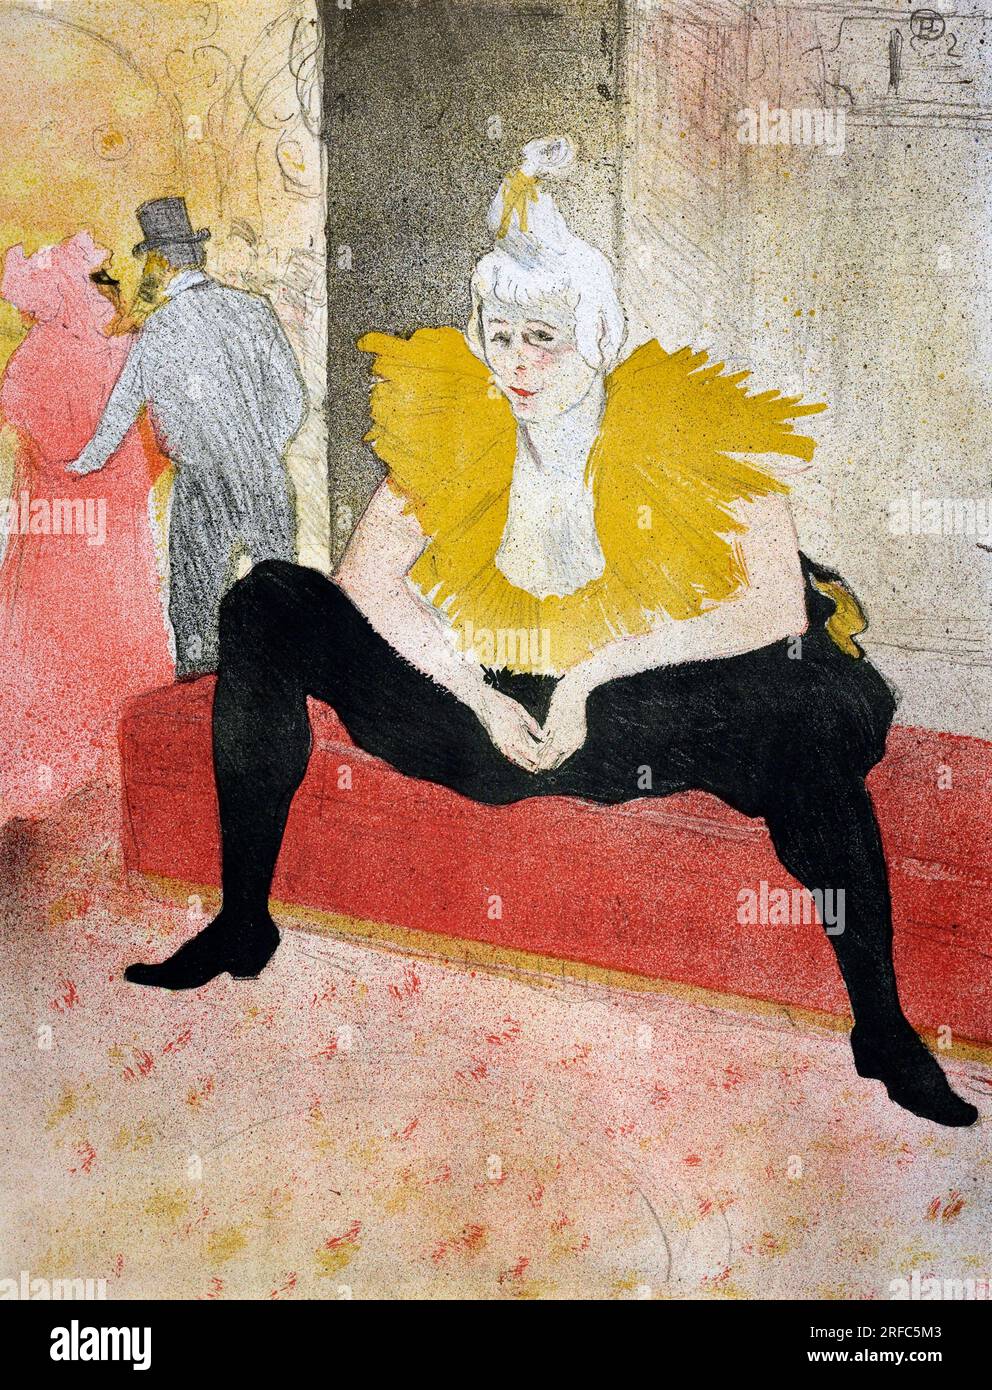 Toulouse-Lautrec. Tableau intitulé 'la clownesse assise' par Henri de Toulouse-Lautrec (1864-1901), lithographie en trois couleurs sur papier tissé, 1896 Banque D'Images